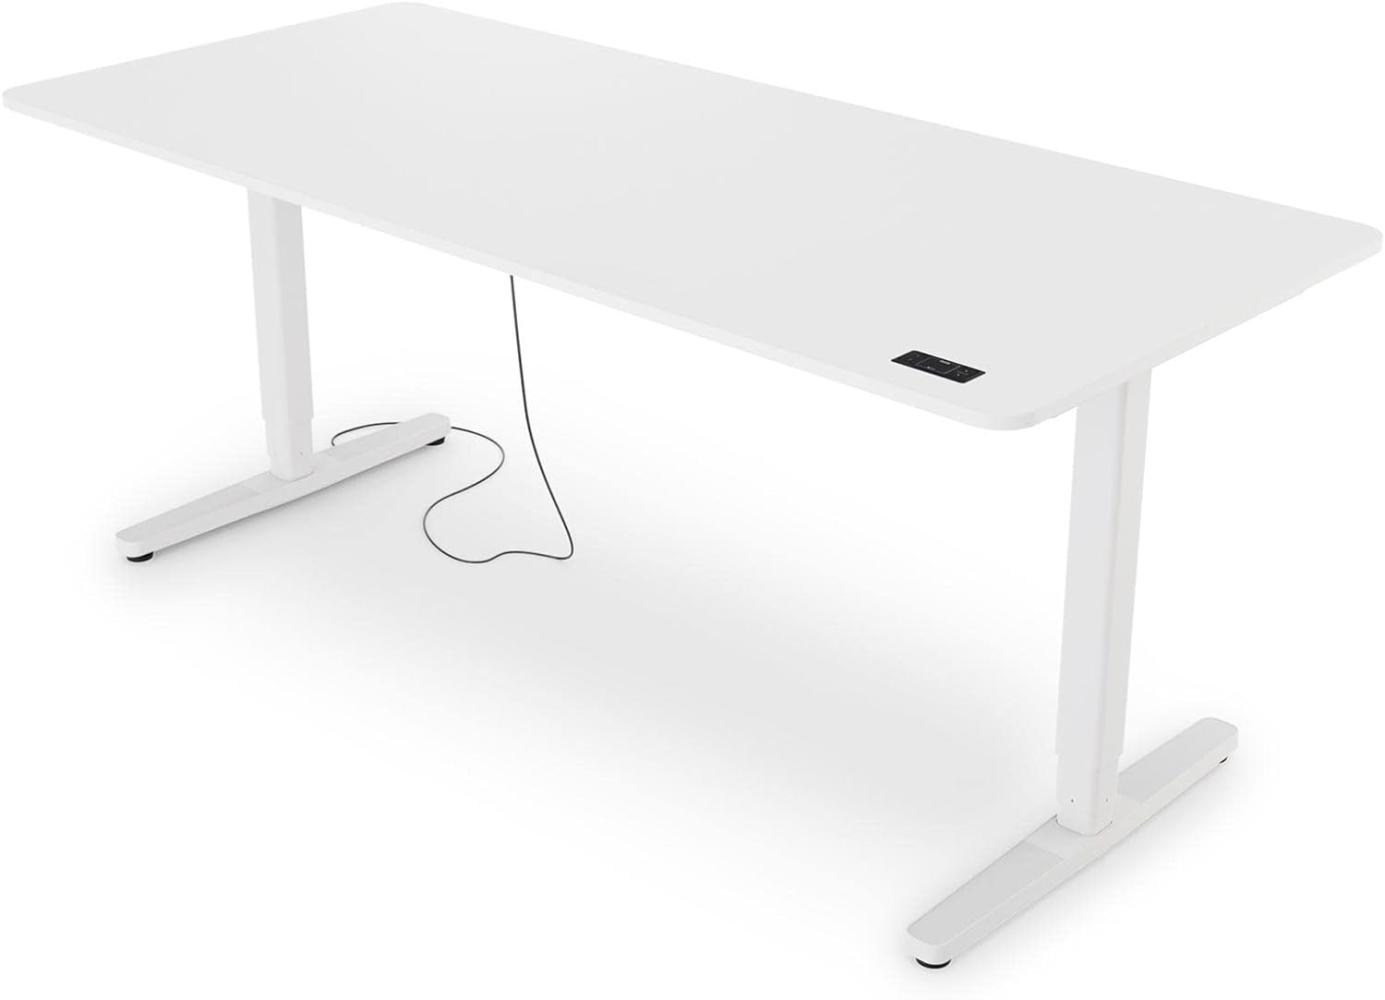 Yaasa Desk Pro II Elektrisch Höhenverstellbarer Schreibtisch, 180 x 80 cm, Off-White, mit Speicherfunktion und Kollisionssensor Bild 1